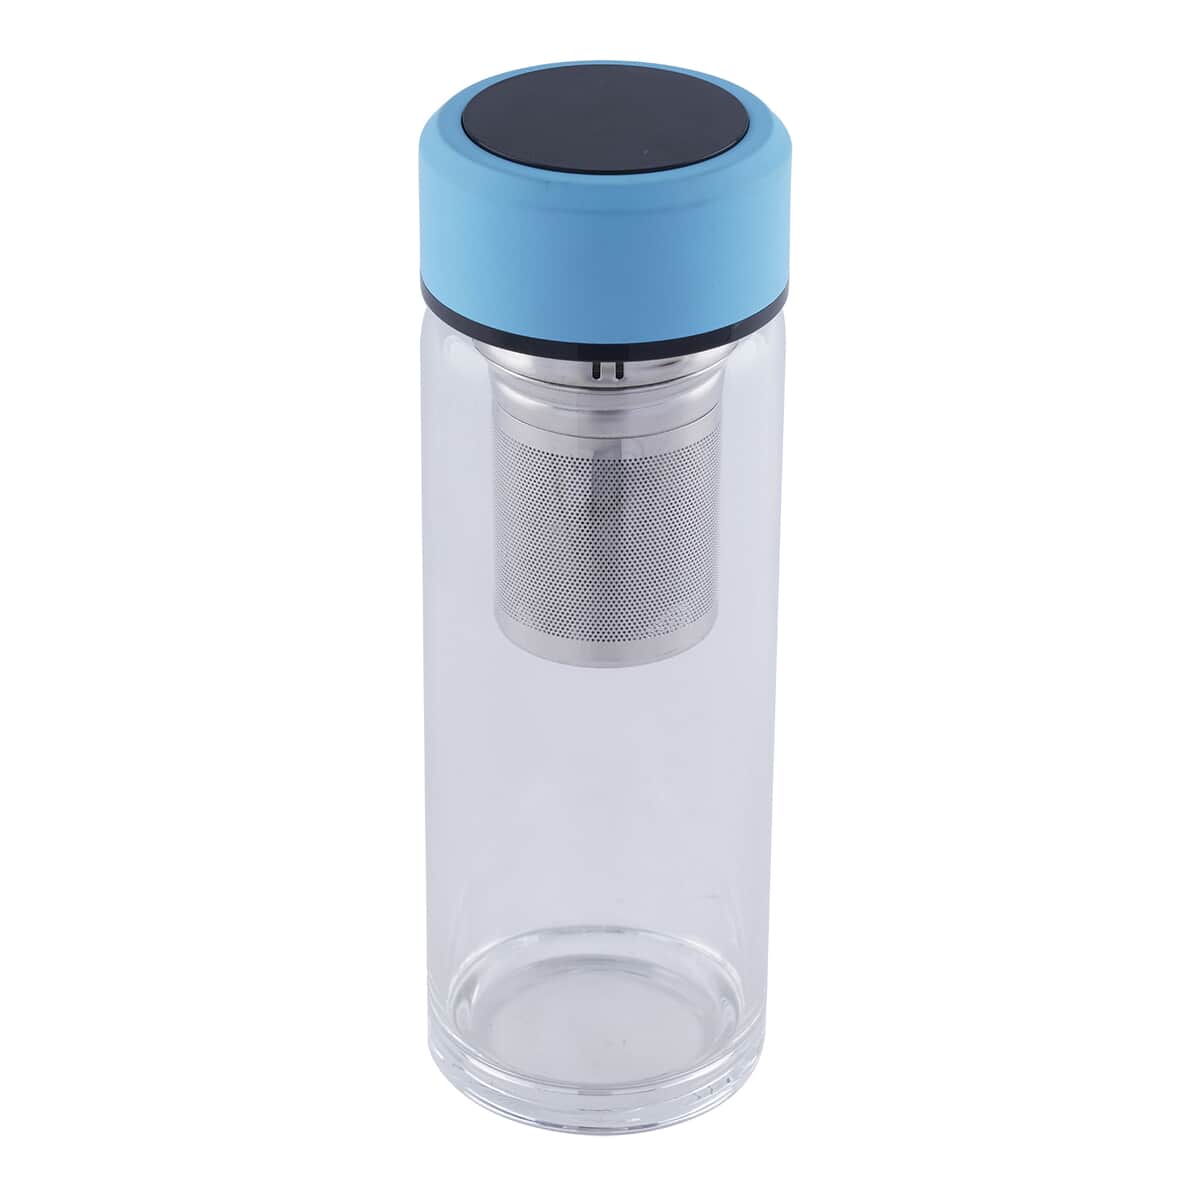 Elite Shungite Filter Infuser and Temperature Sensor Smart Water Bottle (LED Display, Long Filter) - Black image number 0